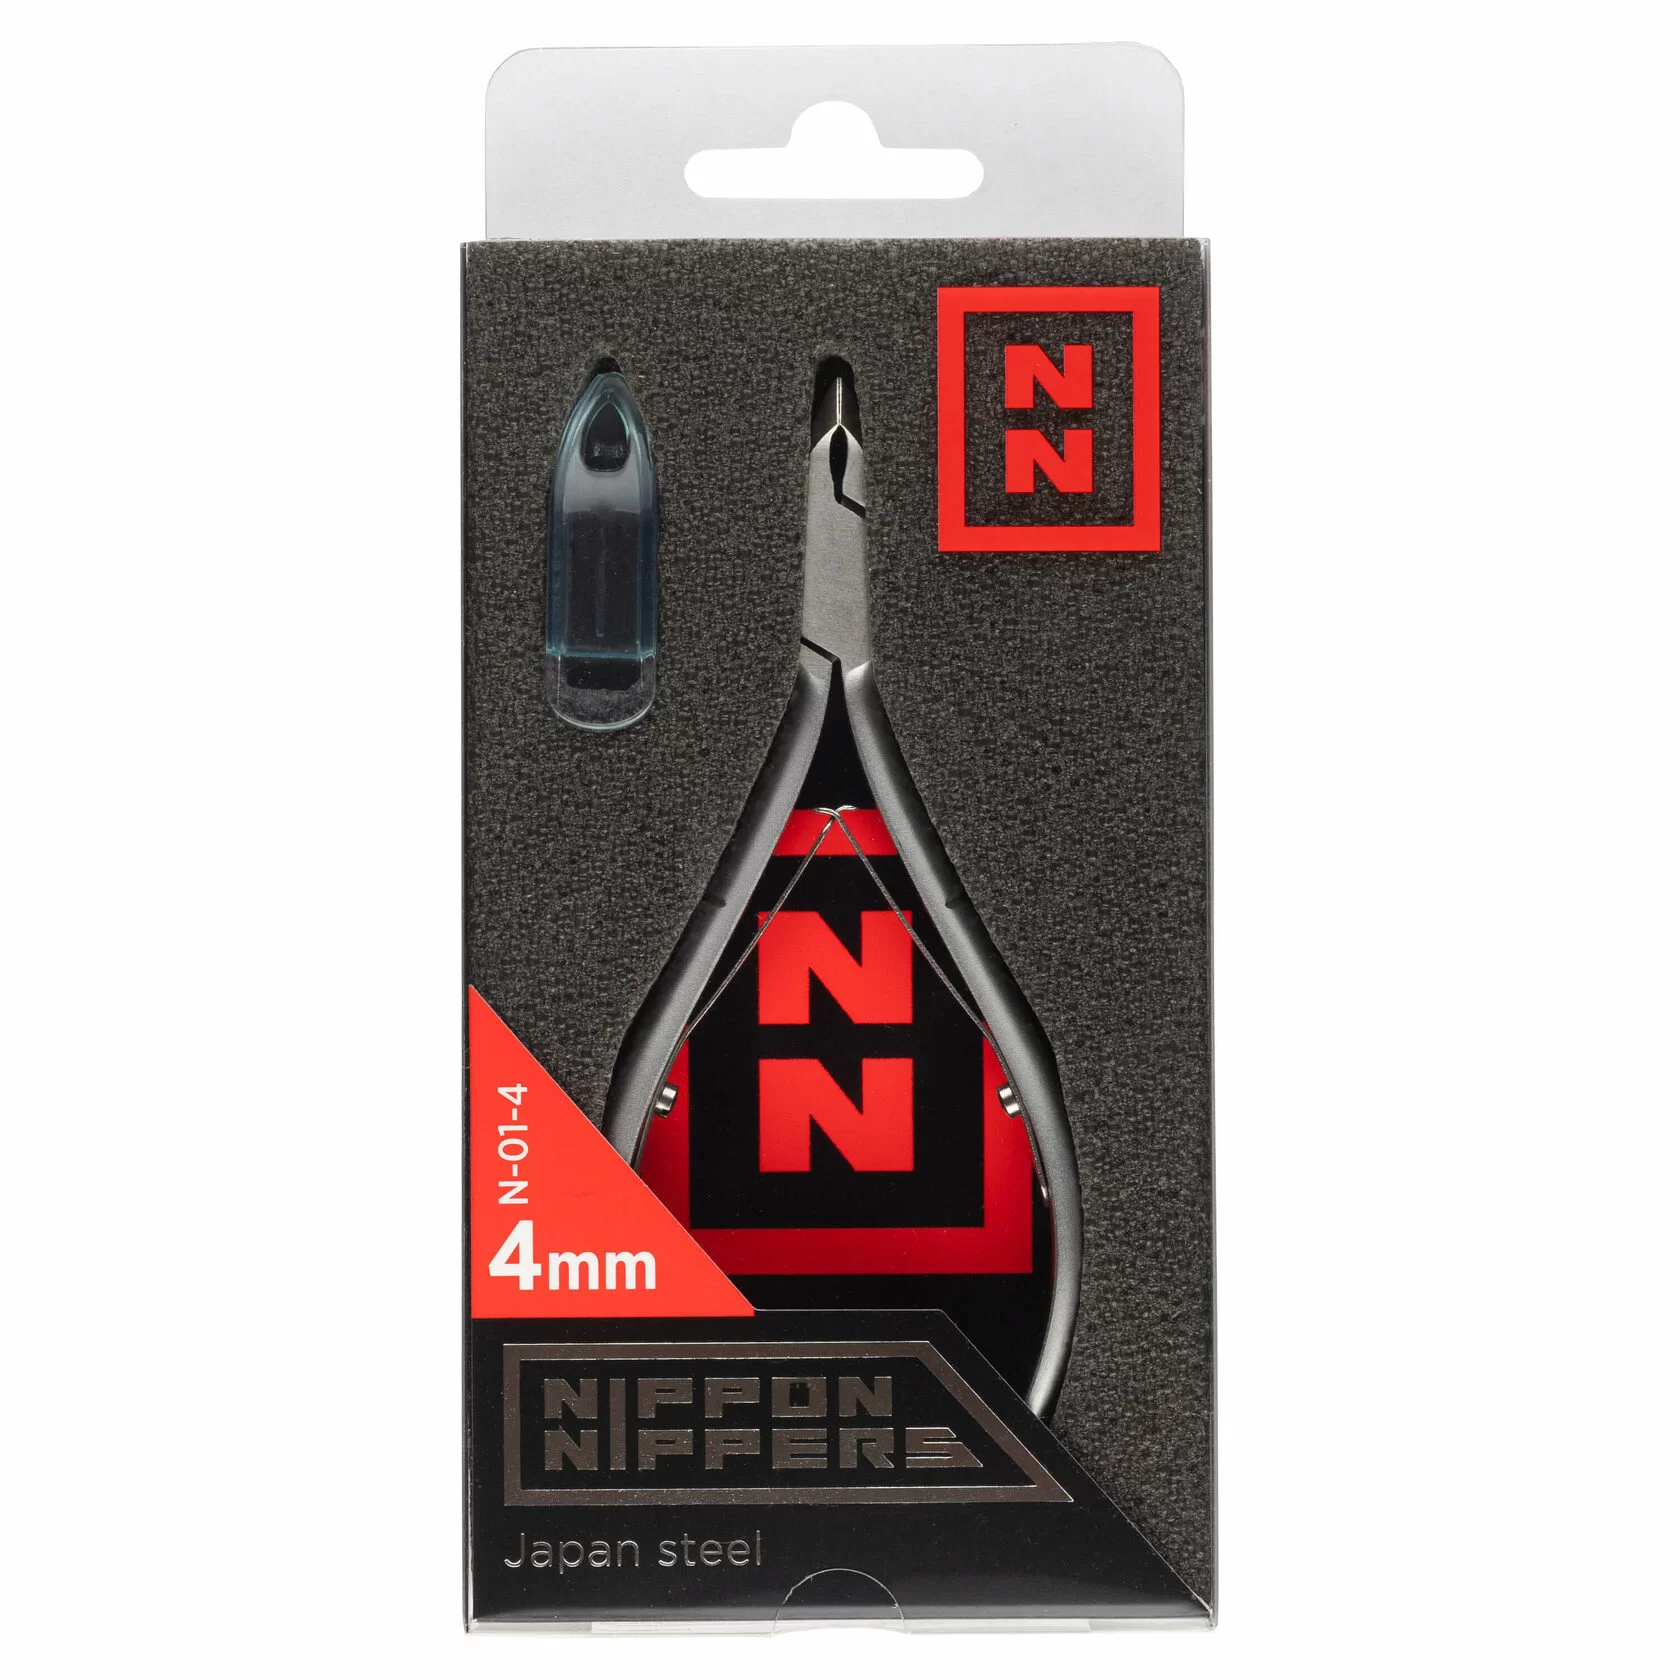 Кусачки Nippon Nippers N-01-4 для кутикулы, (4мм) двойная пружина, матовые. АКЦИЯ